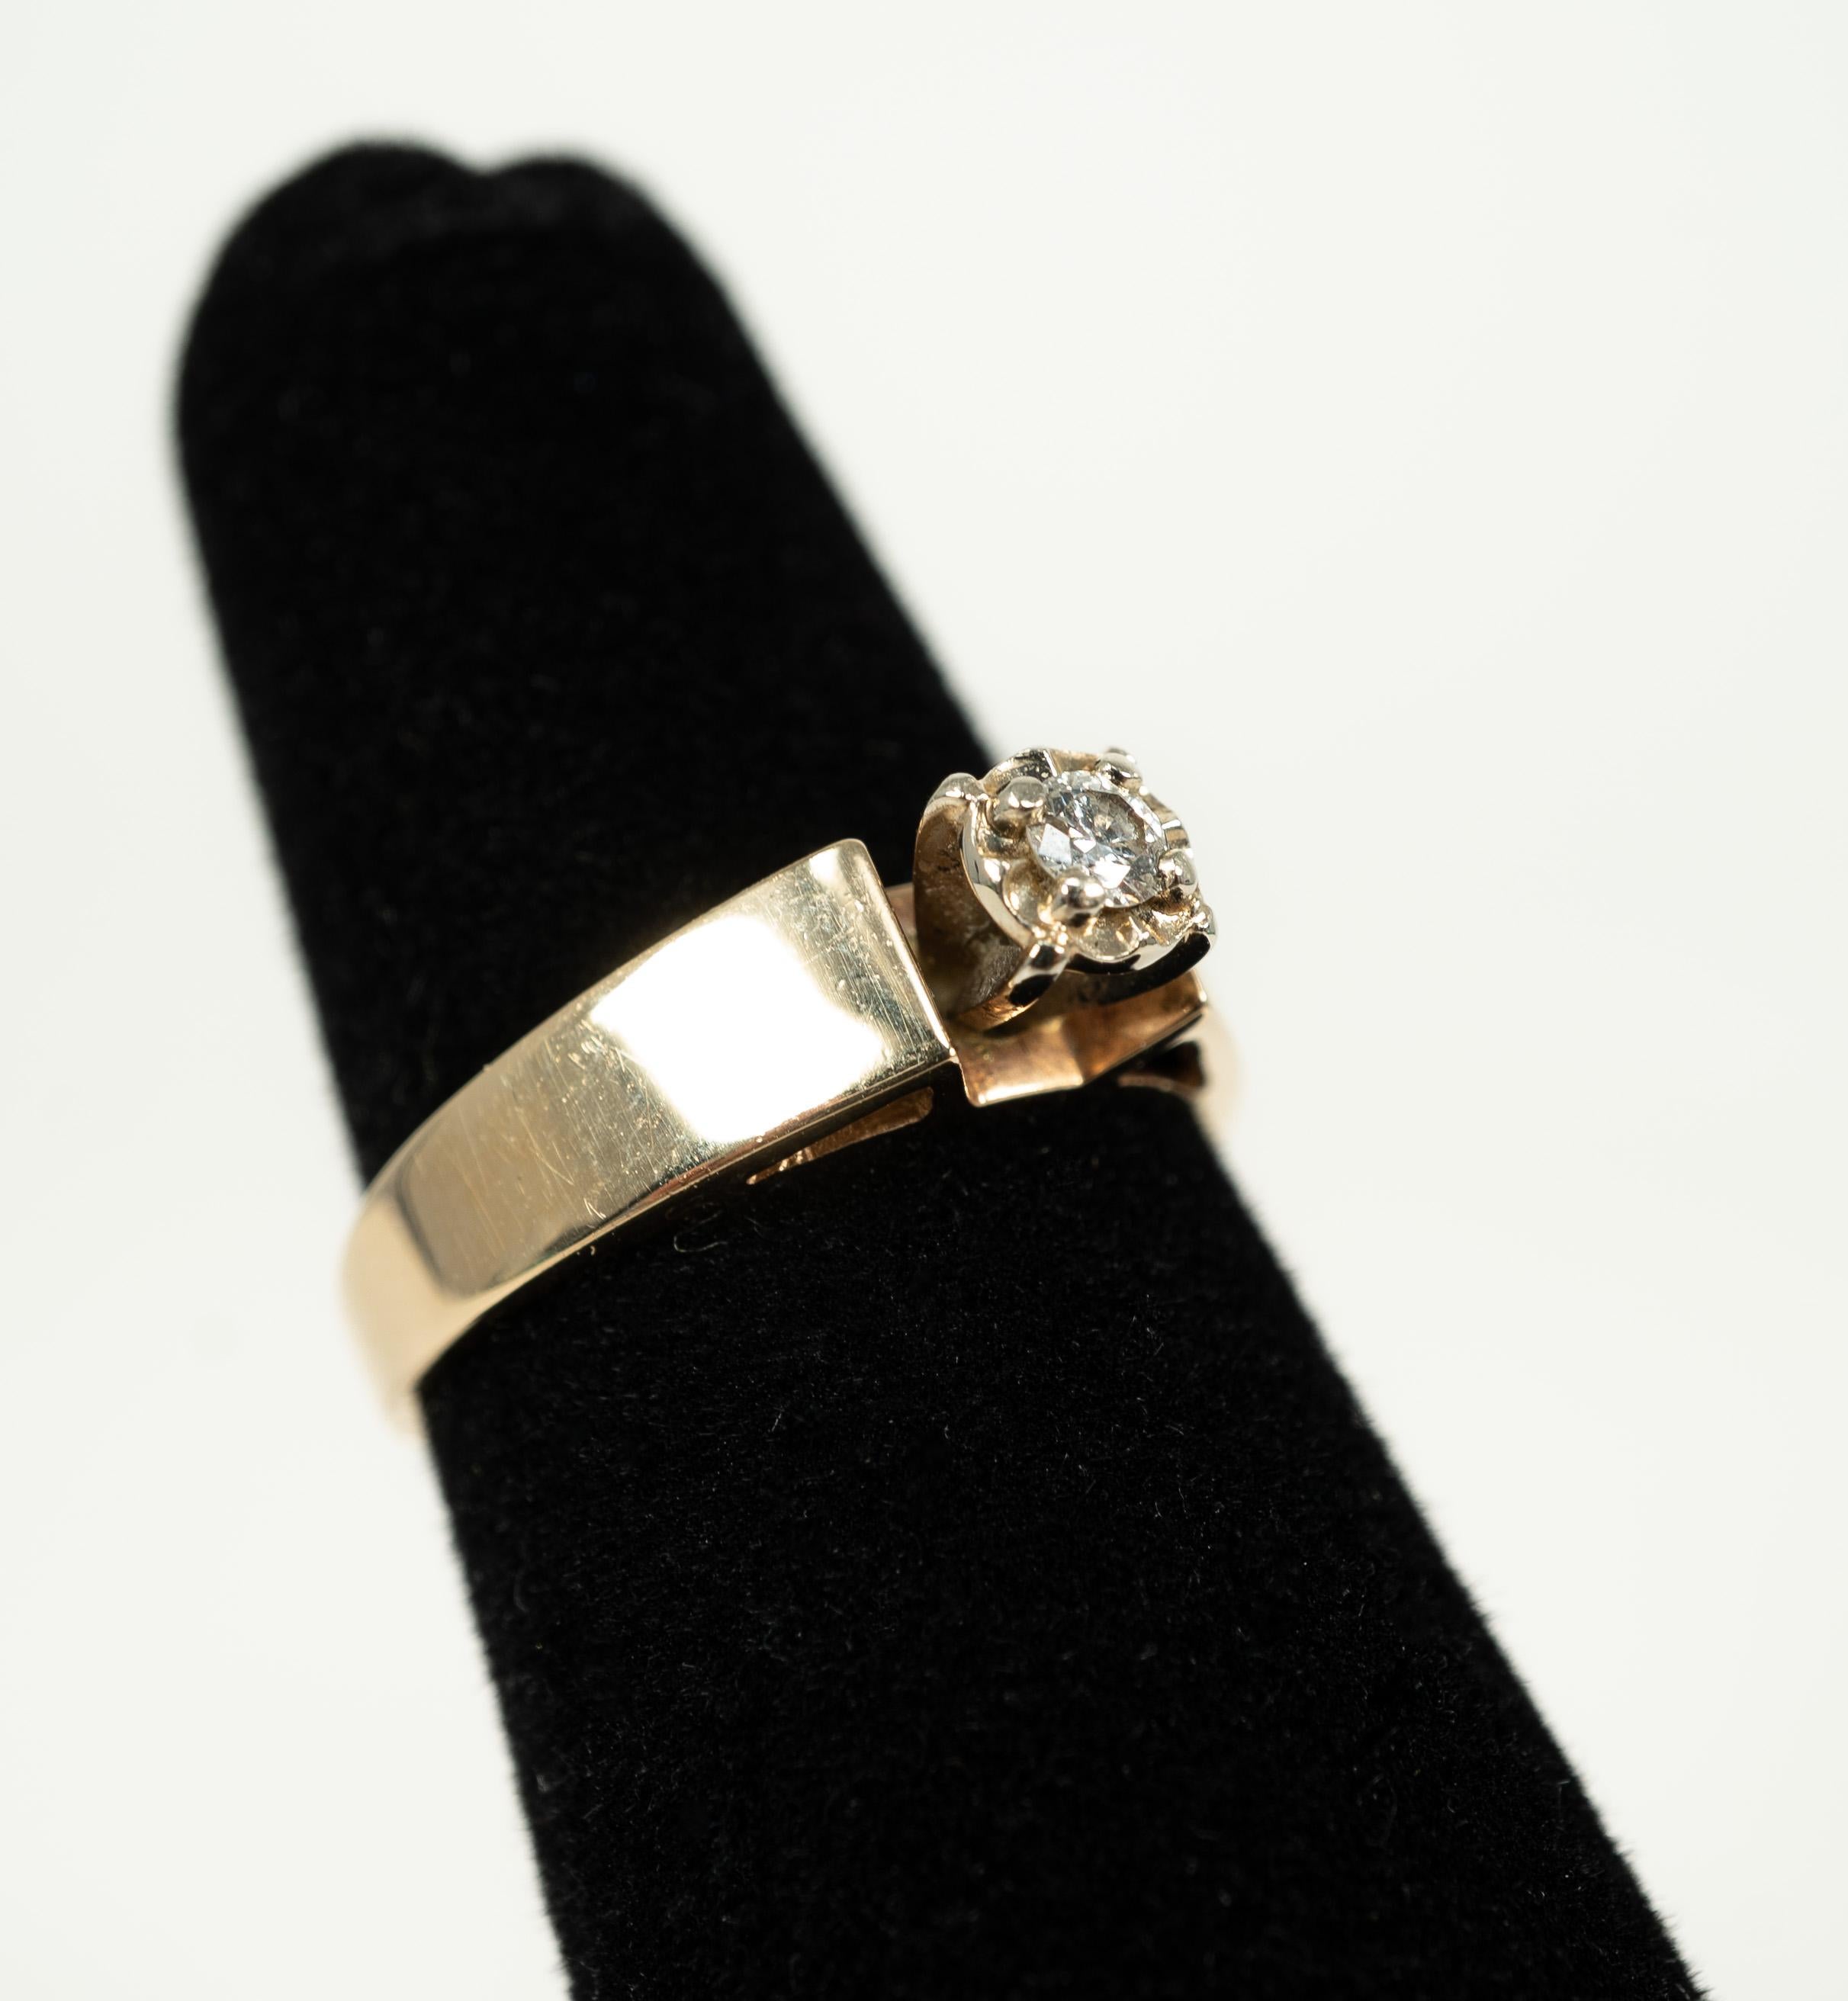 In 14 karat yellow gold, this 0.10 carat round diamond is a sparkler!